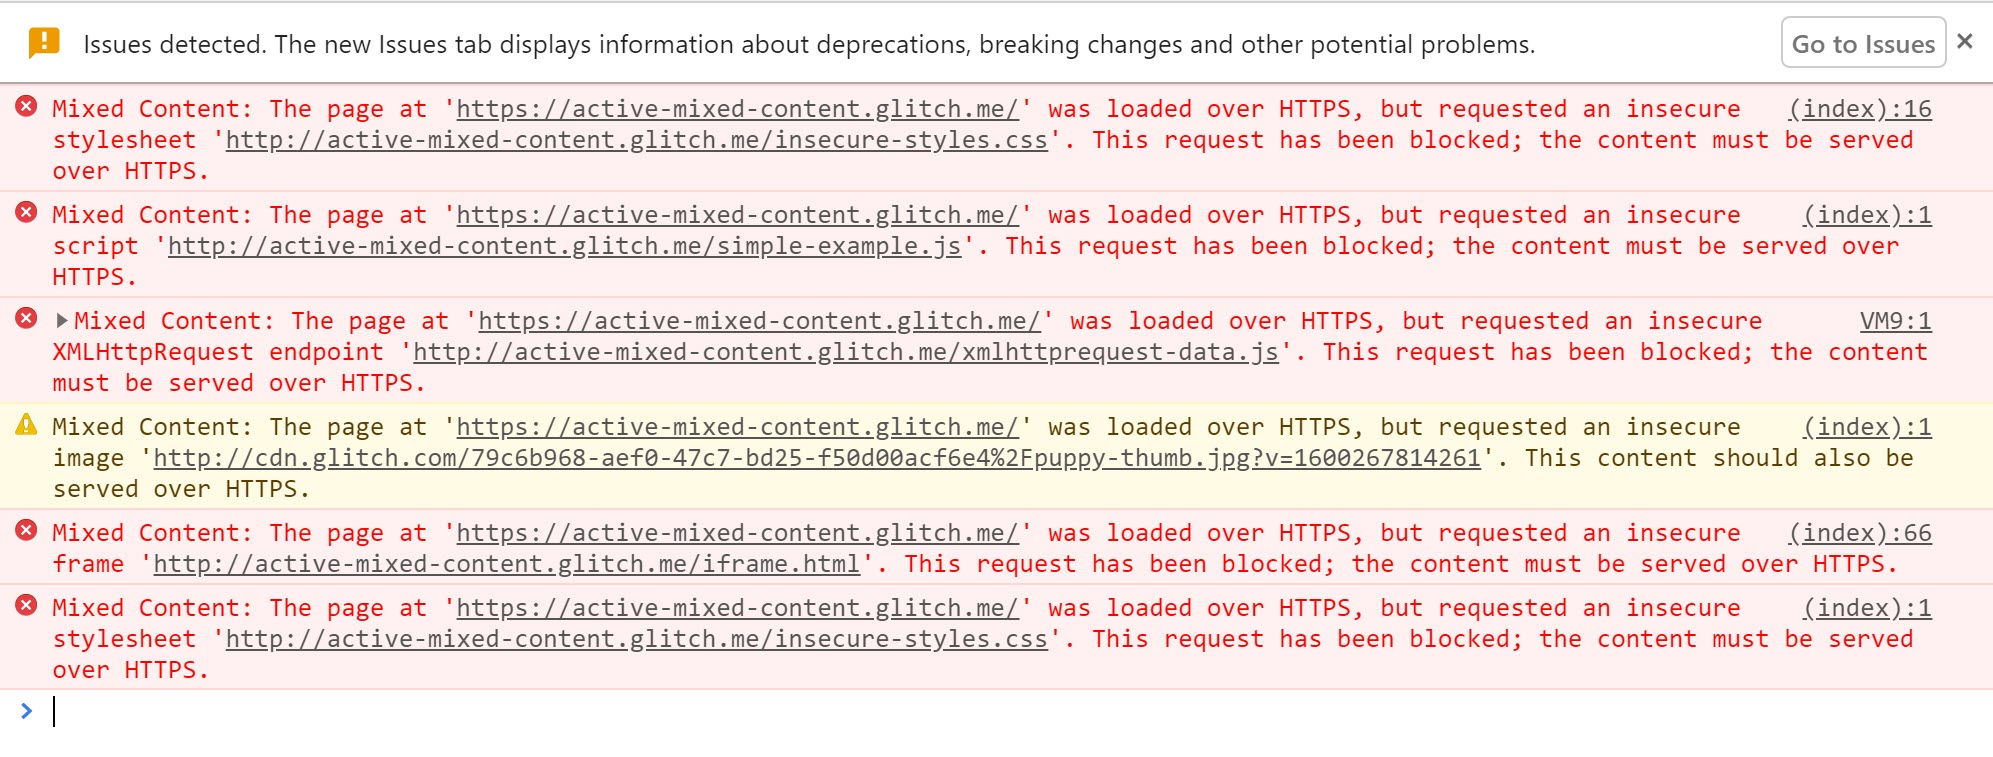 Chrome 開發人員工具，顯示有效複合型內容遭到封鎖時所顯示的警告